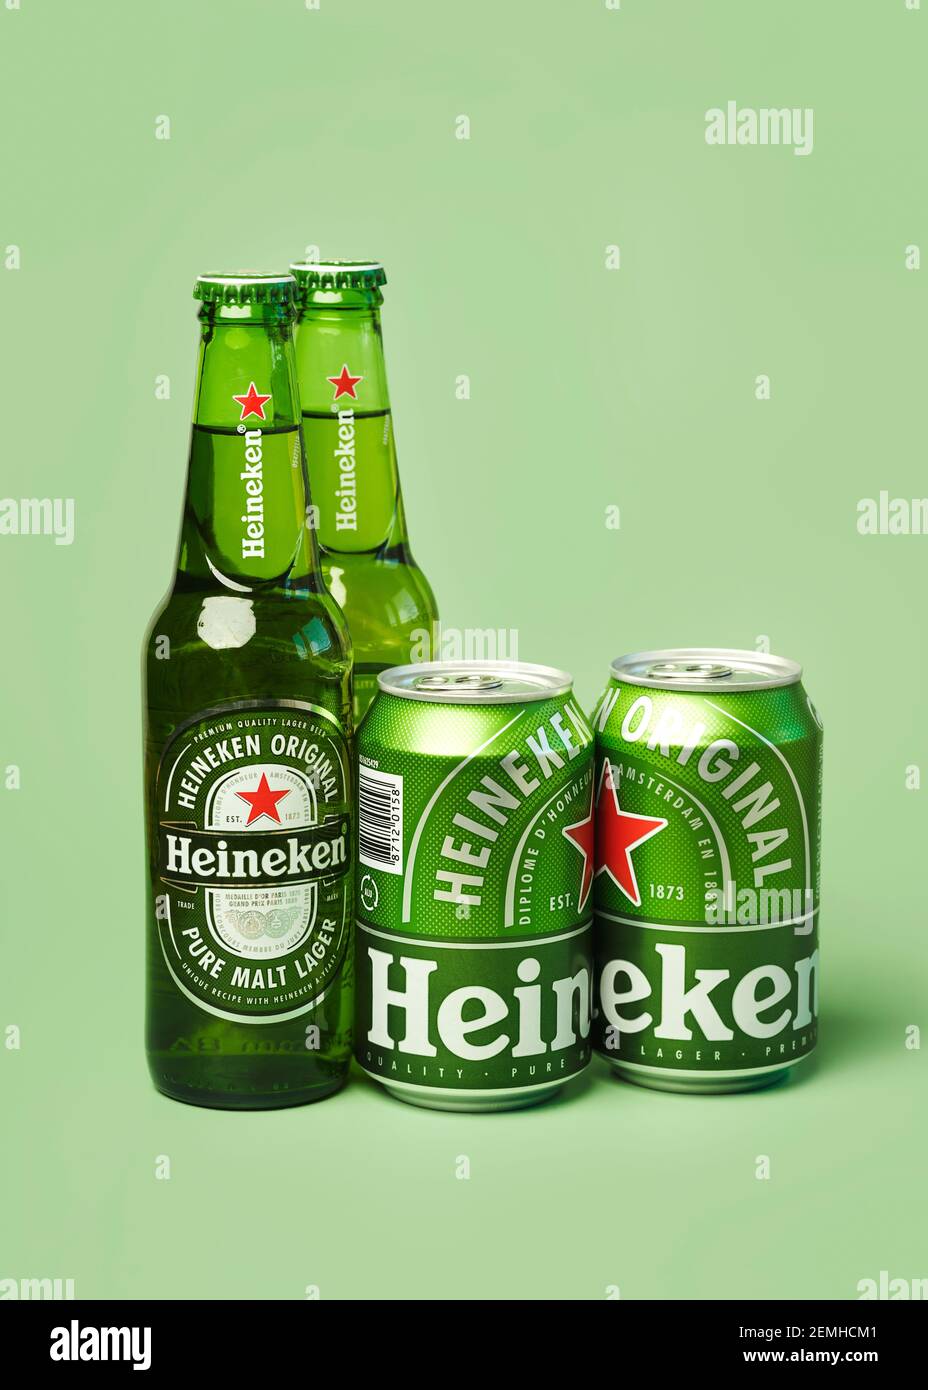 Heineken lager beer bottles and Heineken beer aluminum cans on green background Stock Photo